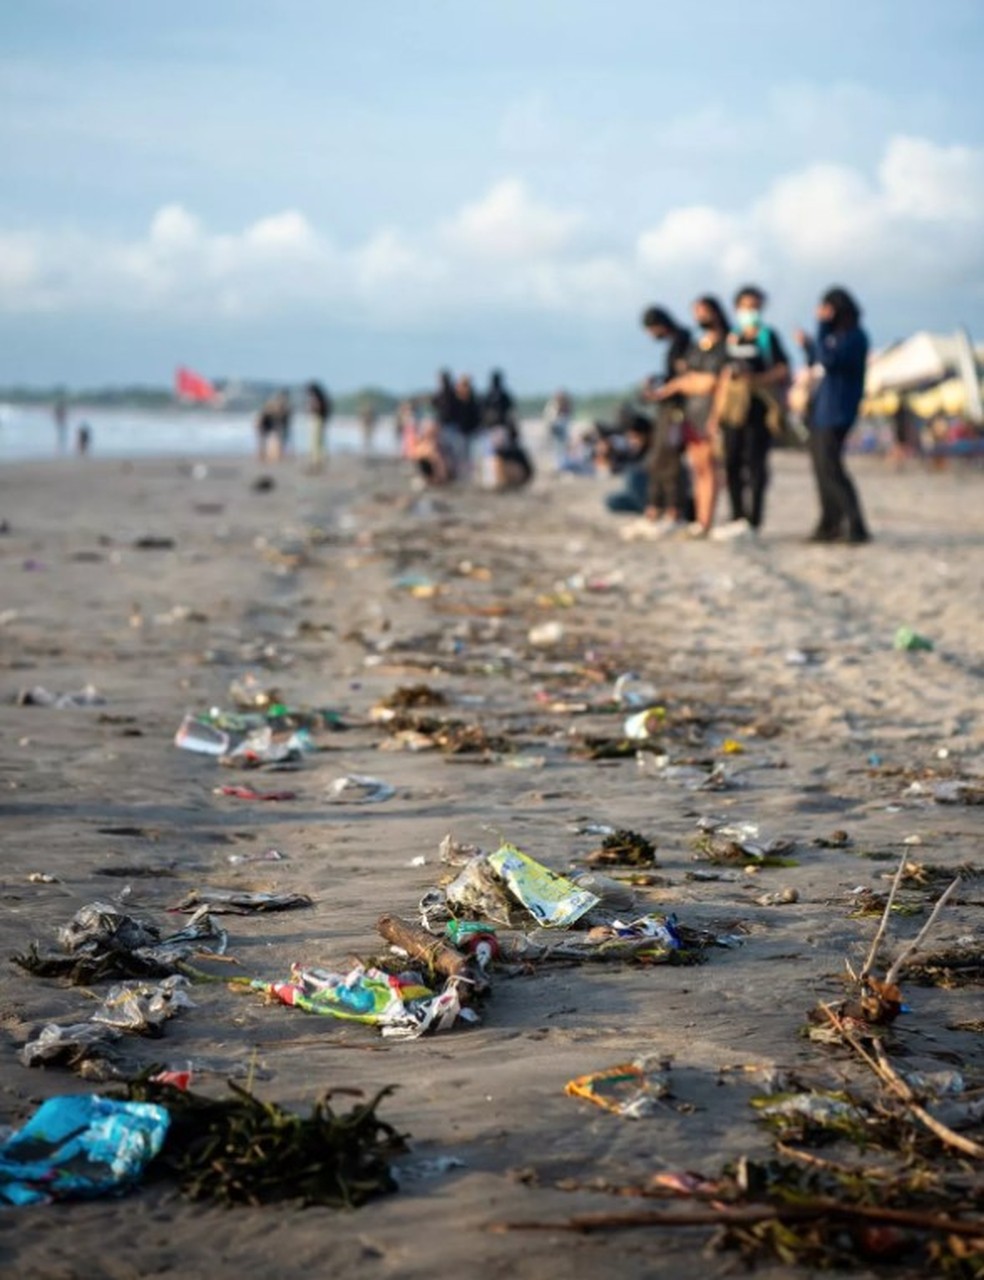 Paraíso de Bali surpreende turistas com areia cheia de detritos: 'tsunami de lixo' — Foto: Reprodução